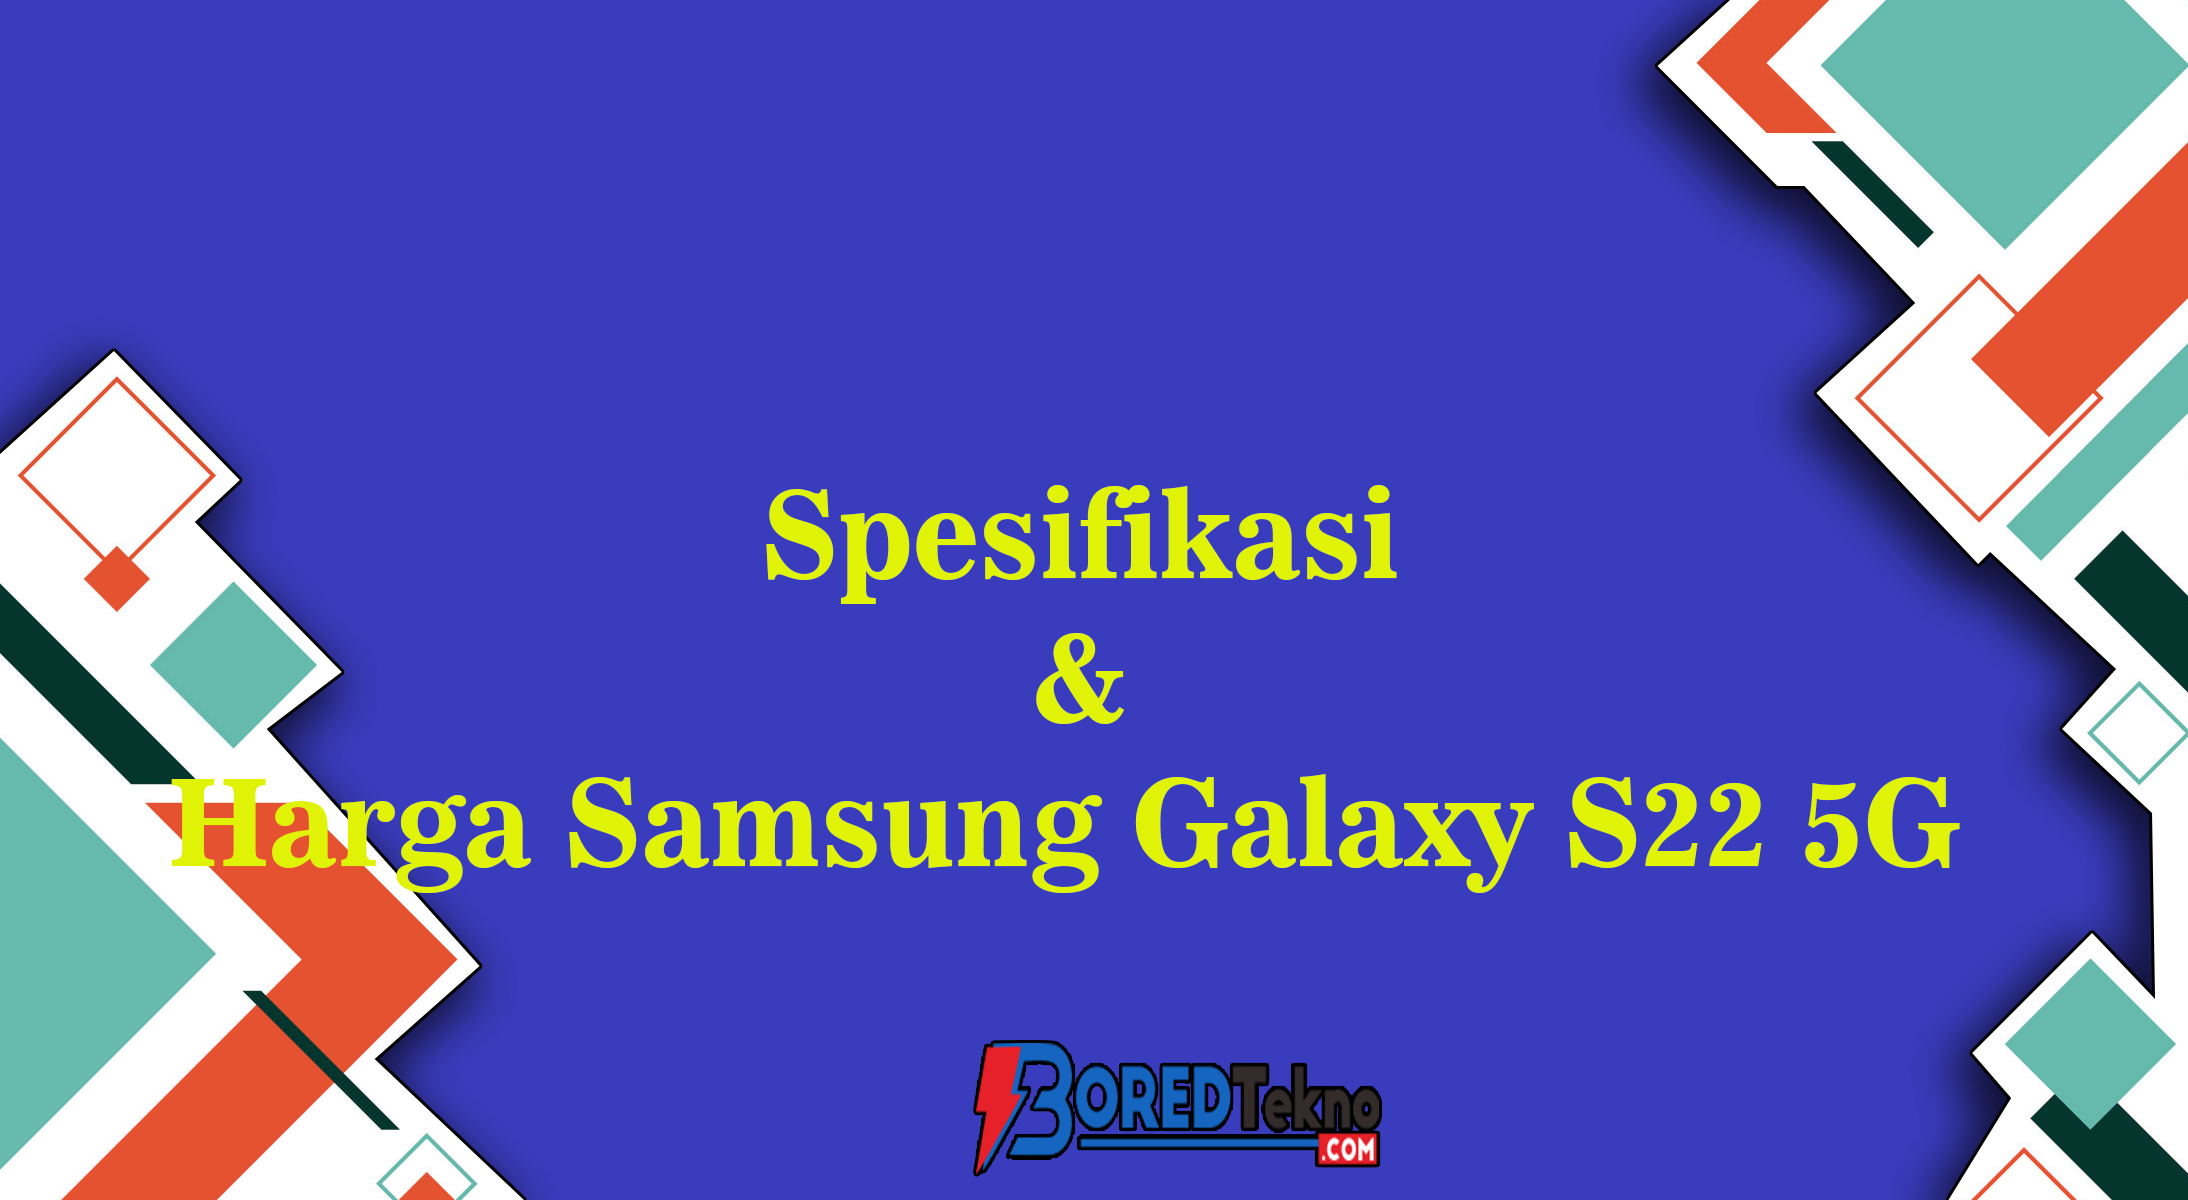 Spesifikasi & Harga Samsung Galaxy S22 5G